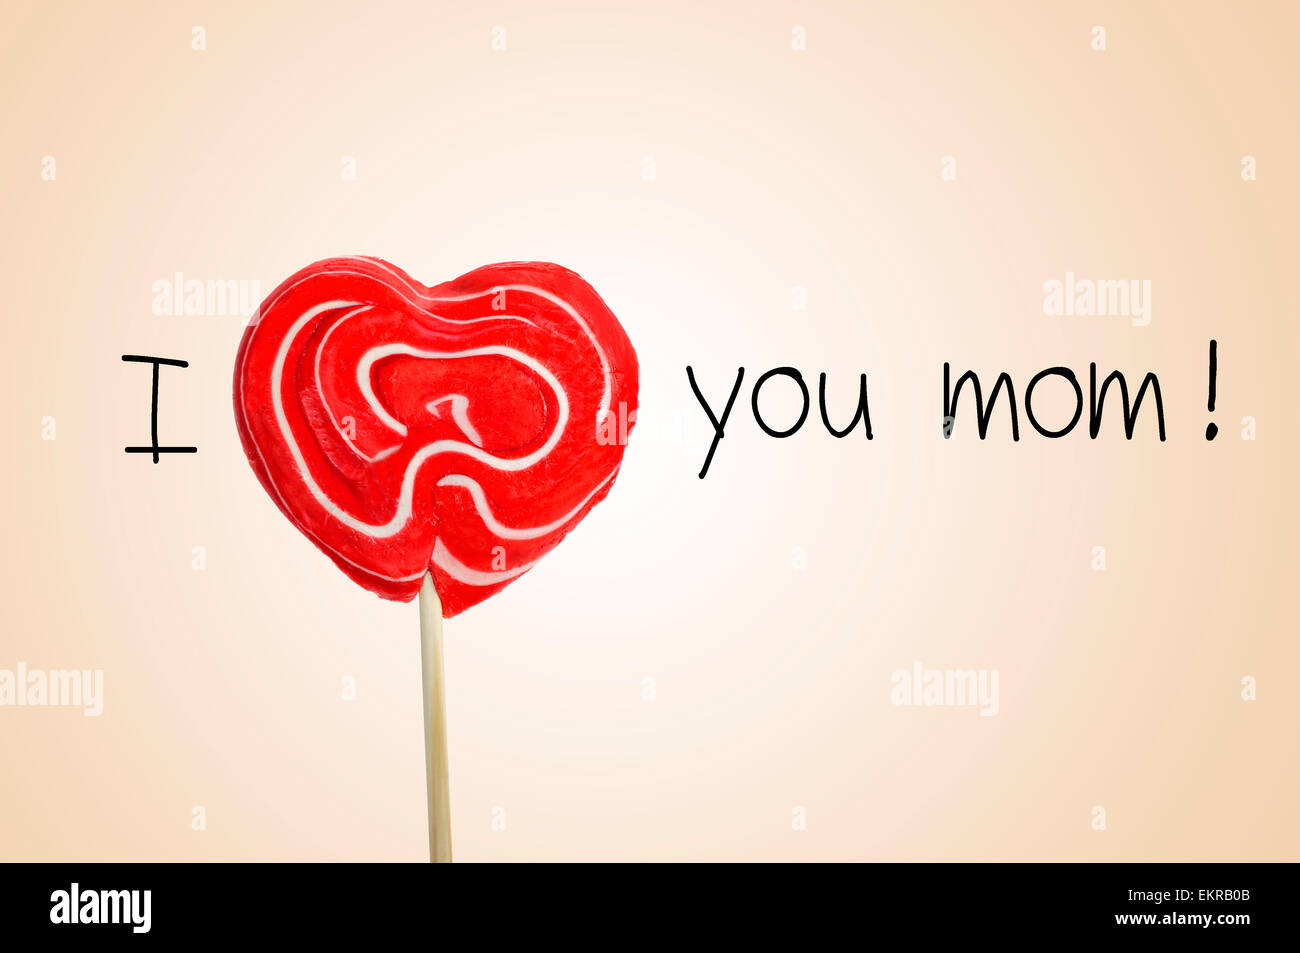 der Satz ich liebe dich Mama mit einem roten herzförmigen Lutscher anstatt das Wort Liebe auf einem beigen Hintergrund Stockfoto